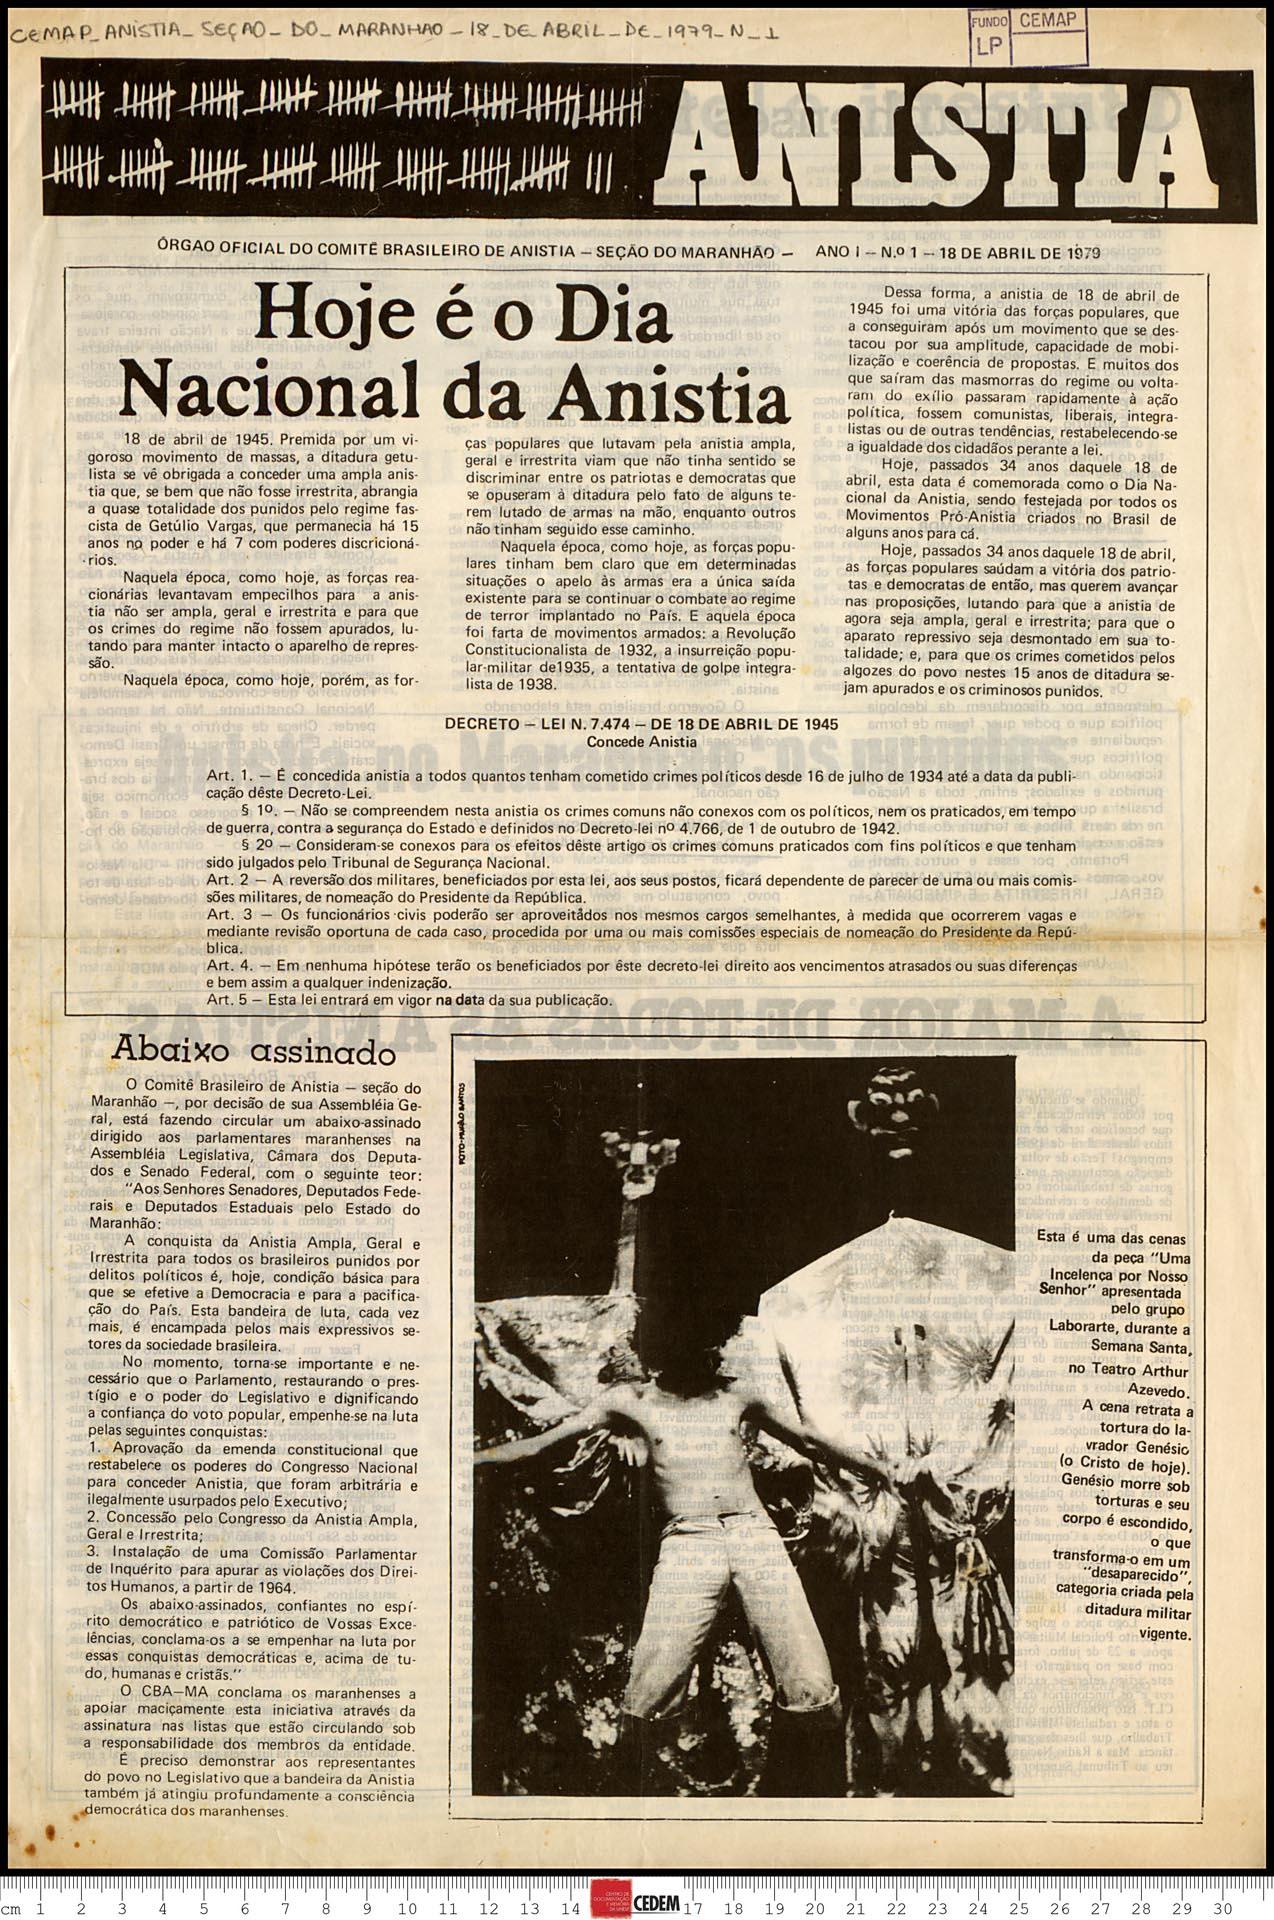 Anistia - Seção Maranhão - 1 - 18 de abr. de 1979